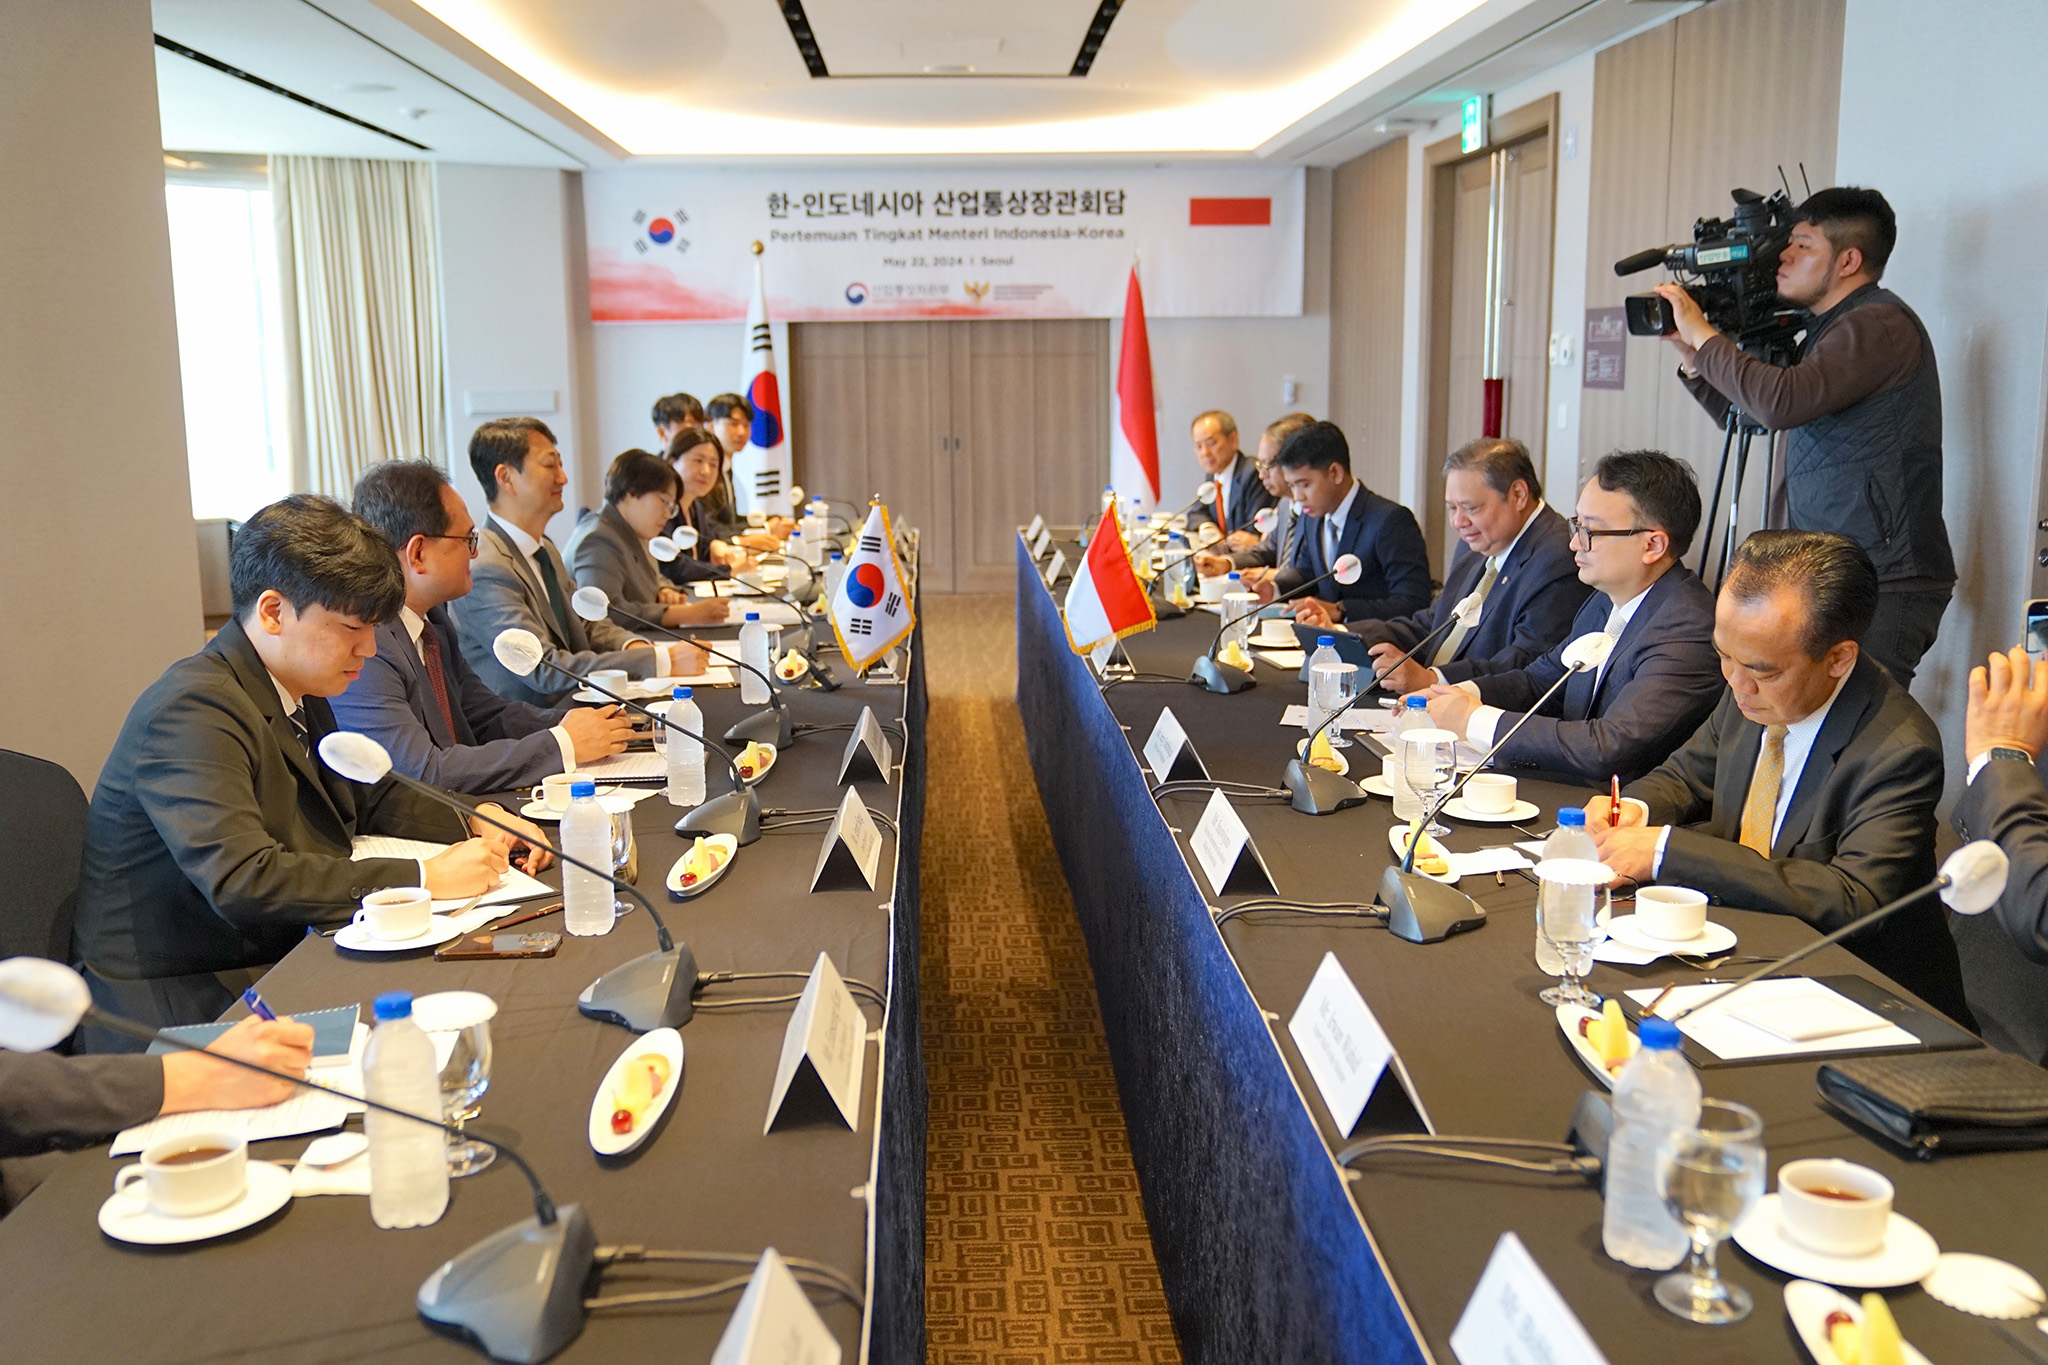 Pertemuan Bilateral Indonesia-Korea Selatan